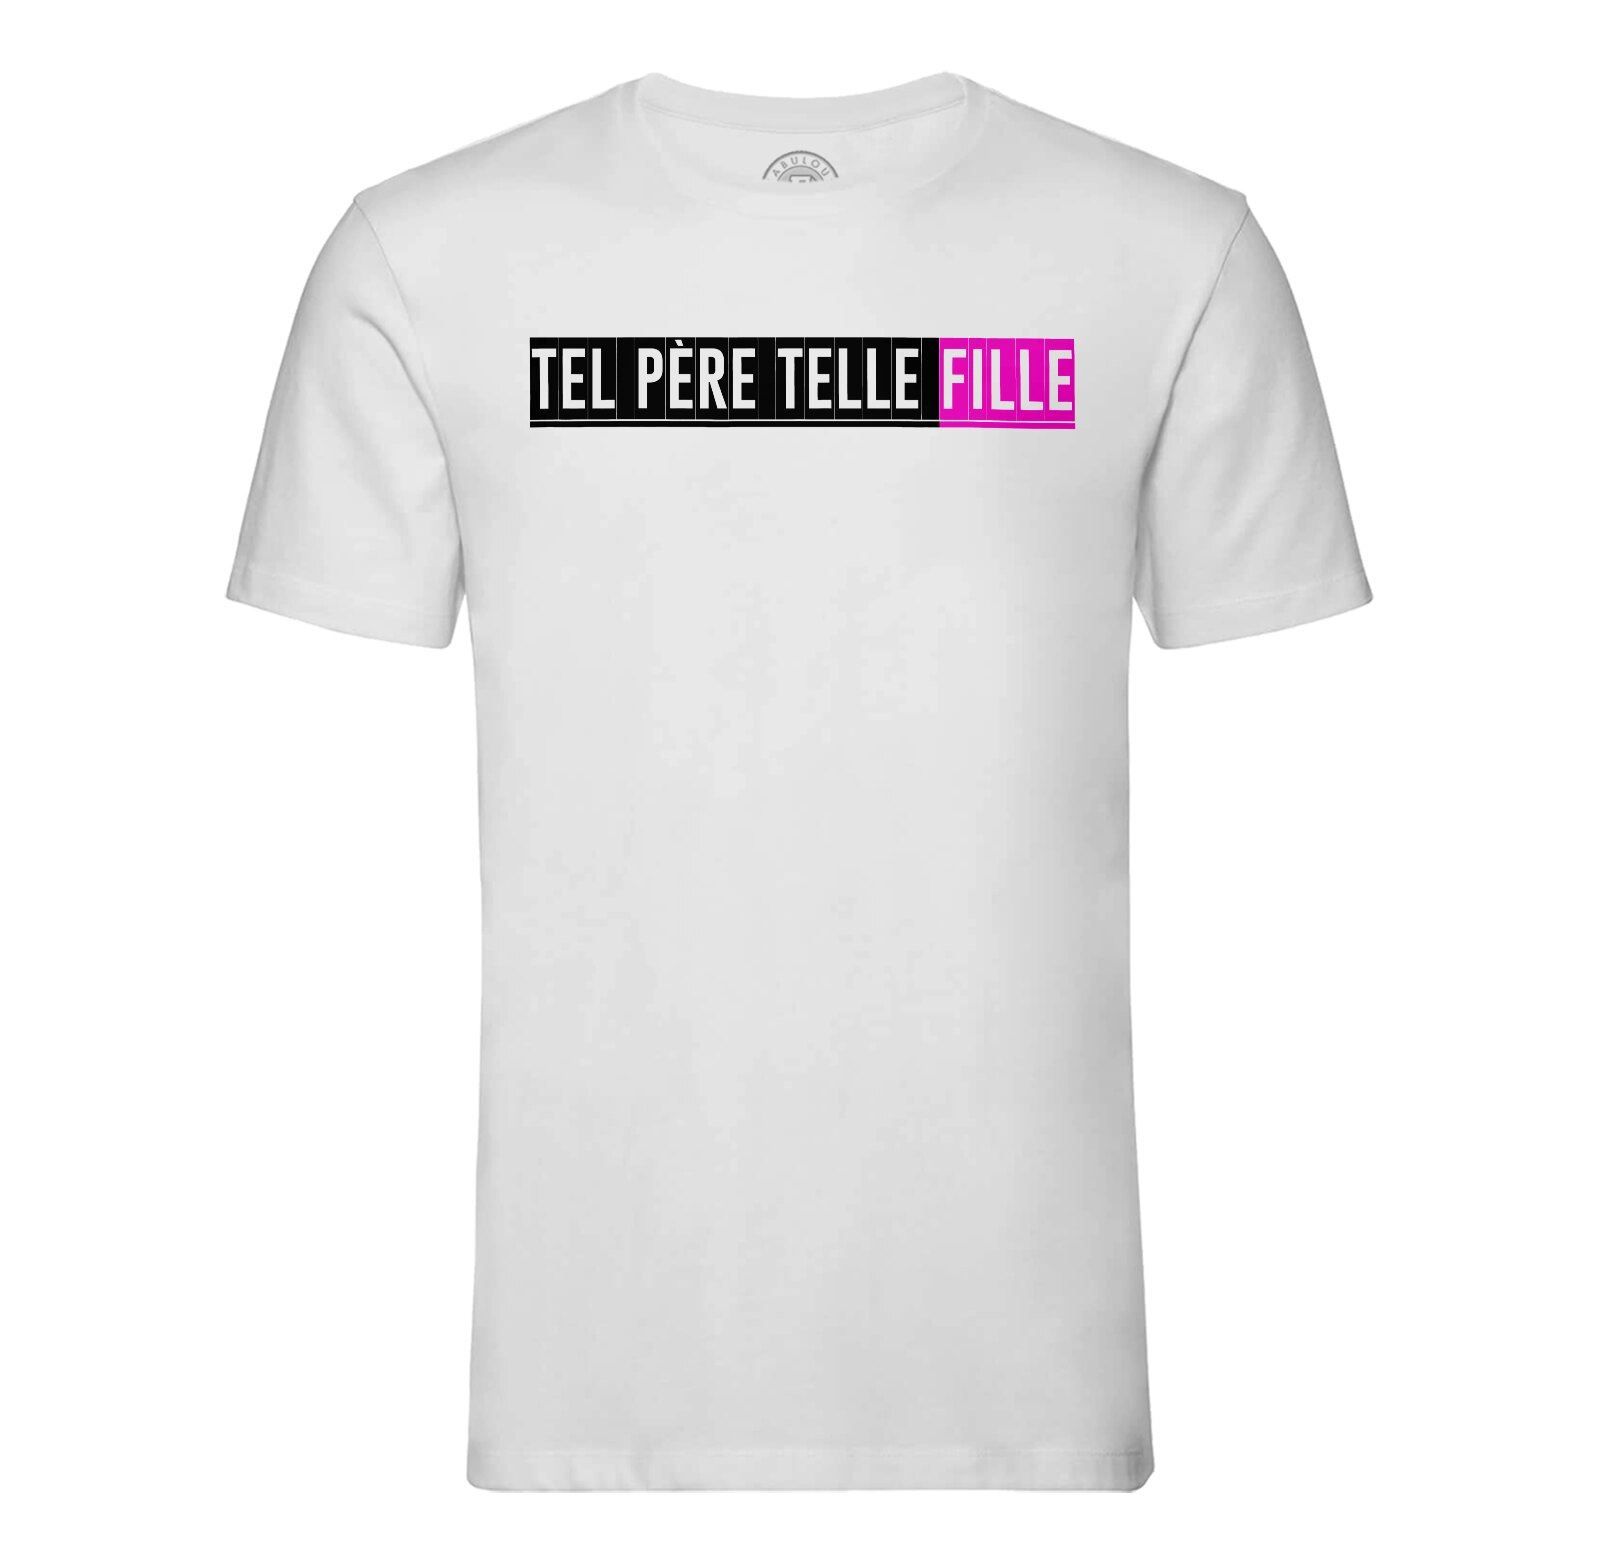 T-shirt Enfant Tel Pere Telle Fille Papa Famille Amour Amitie Drole 